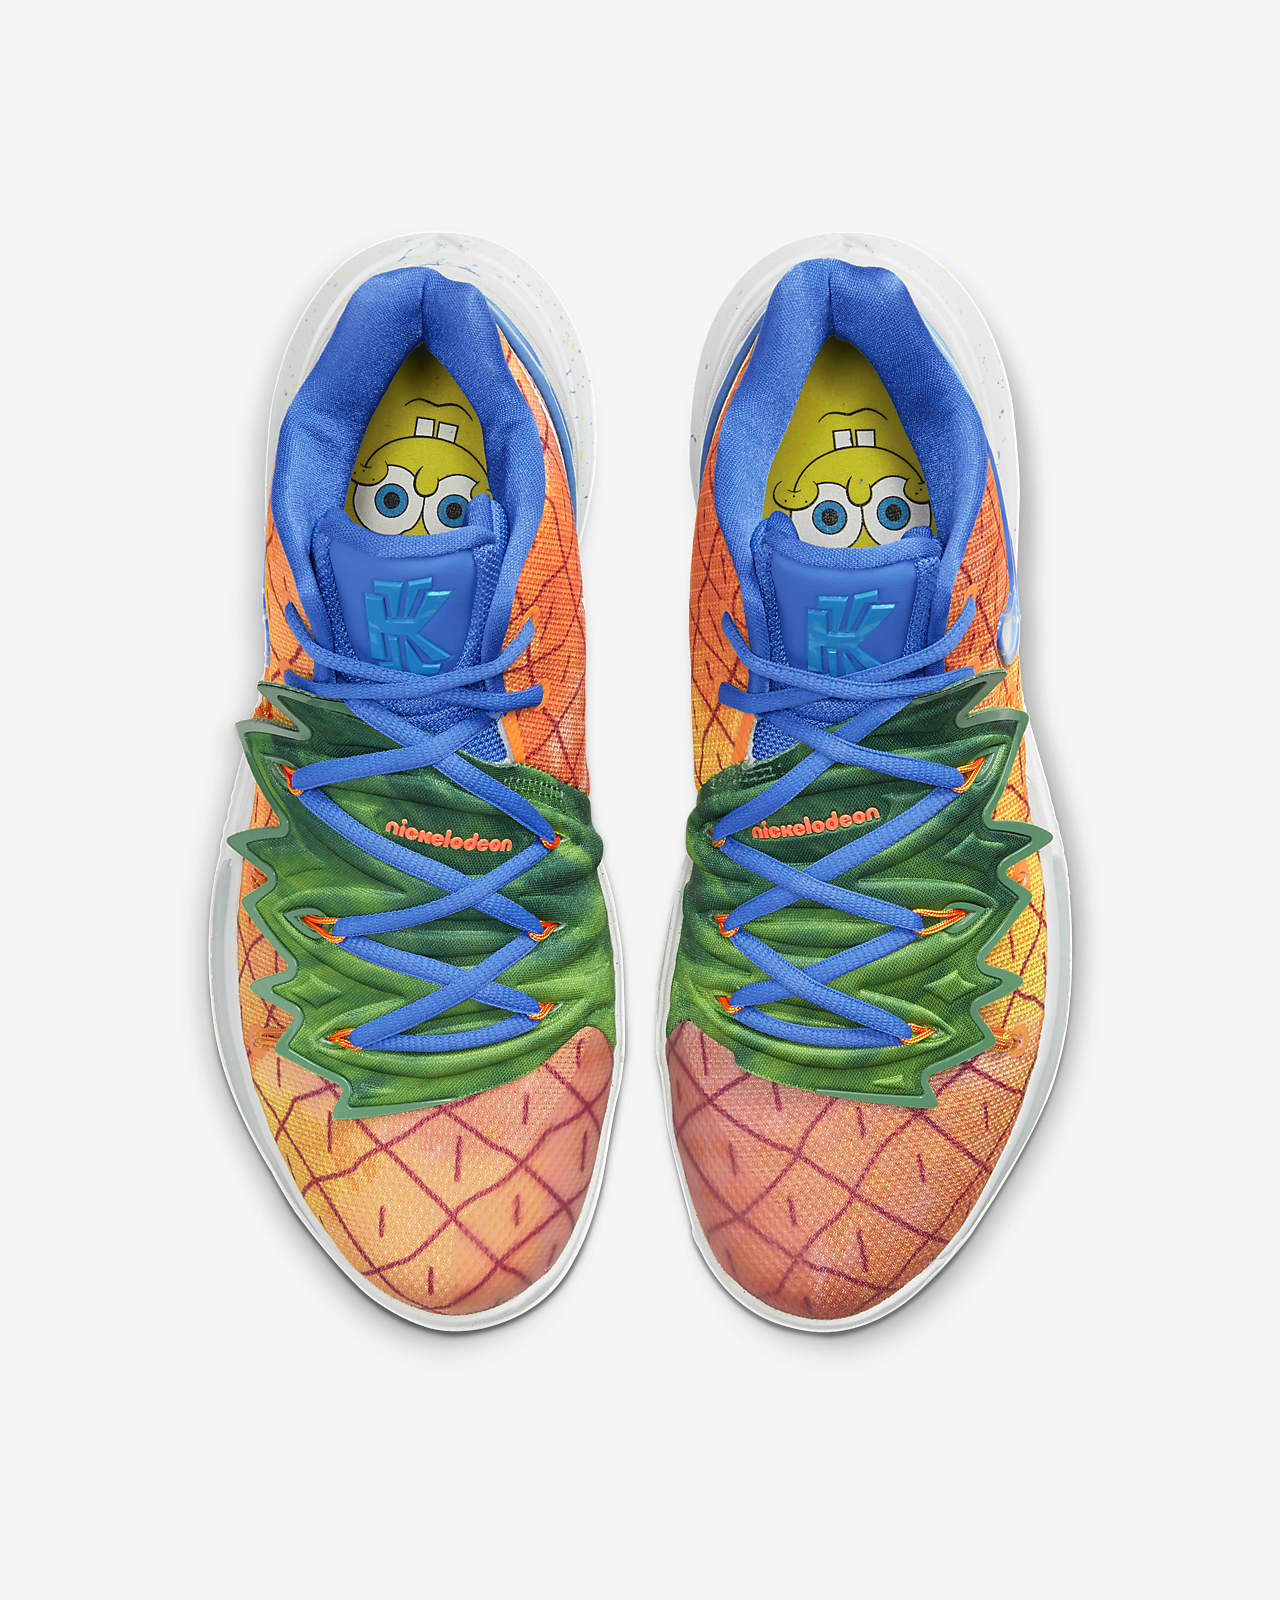 Nike Kyrie 5 Spongebob Pineapple House Cj6950 800 shoes